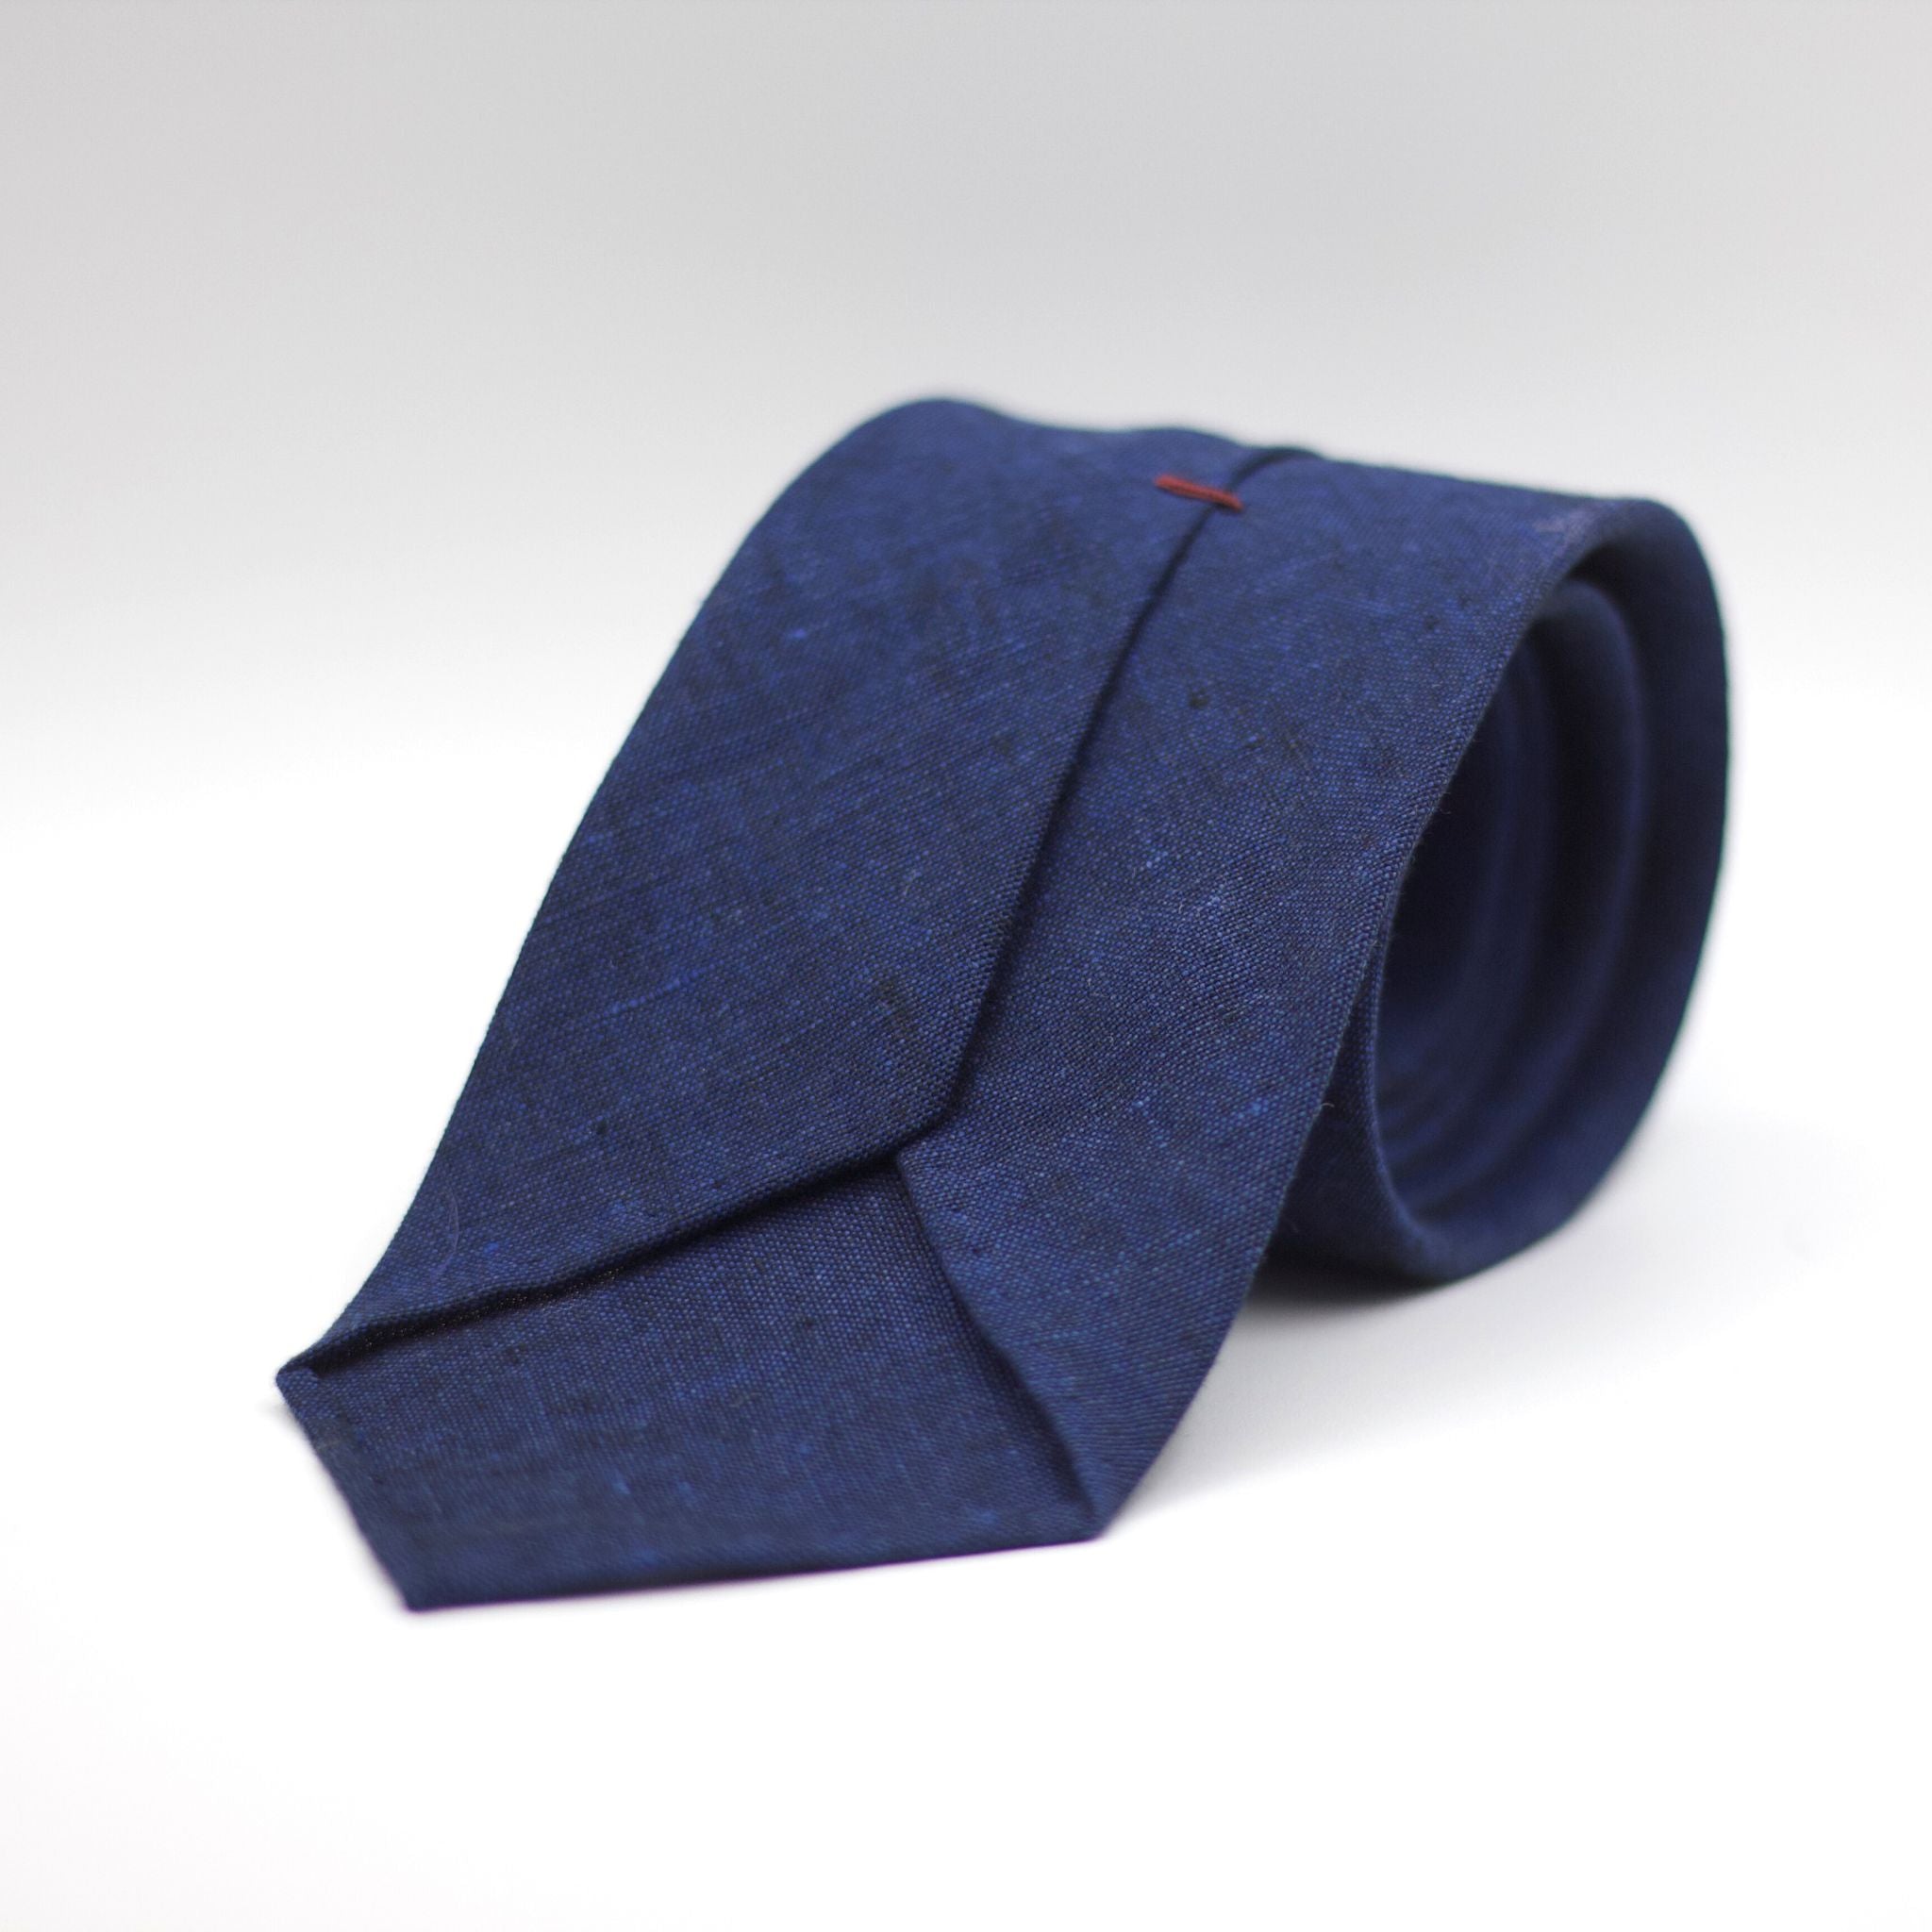 Cruciani & Bella - 100% Woven Jacquard Linen Tie  - Blue solid